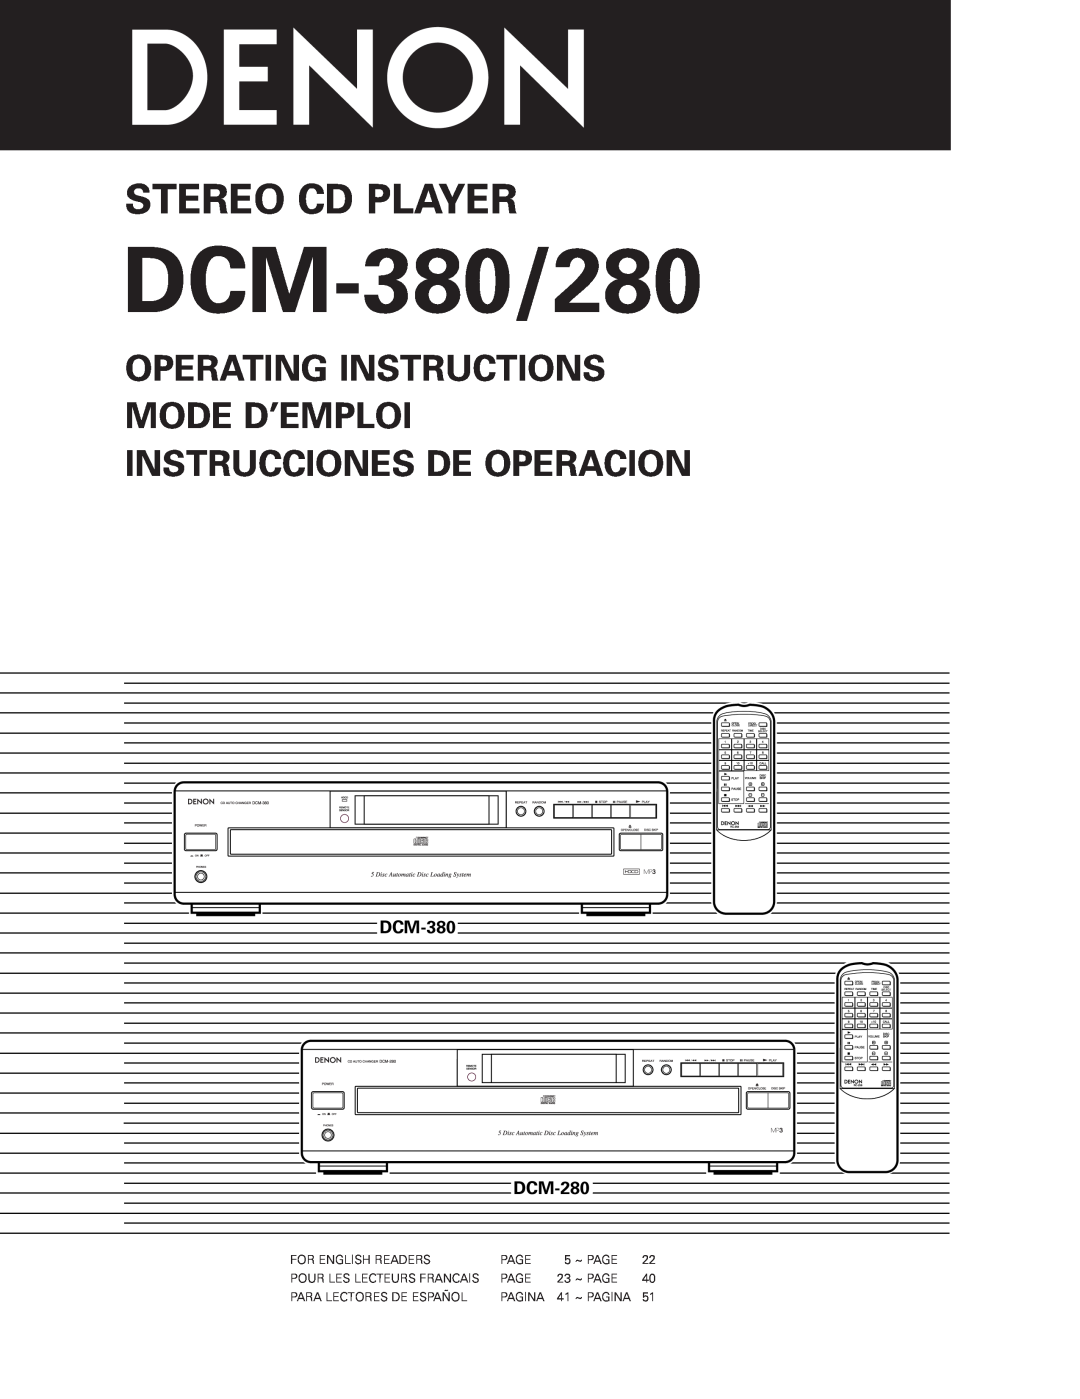 Denon DCM-280 operating instructions Operating Instructions Mode D’Emploi, Instrucciones De Operacion, DCM-380 